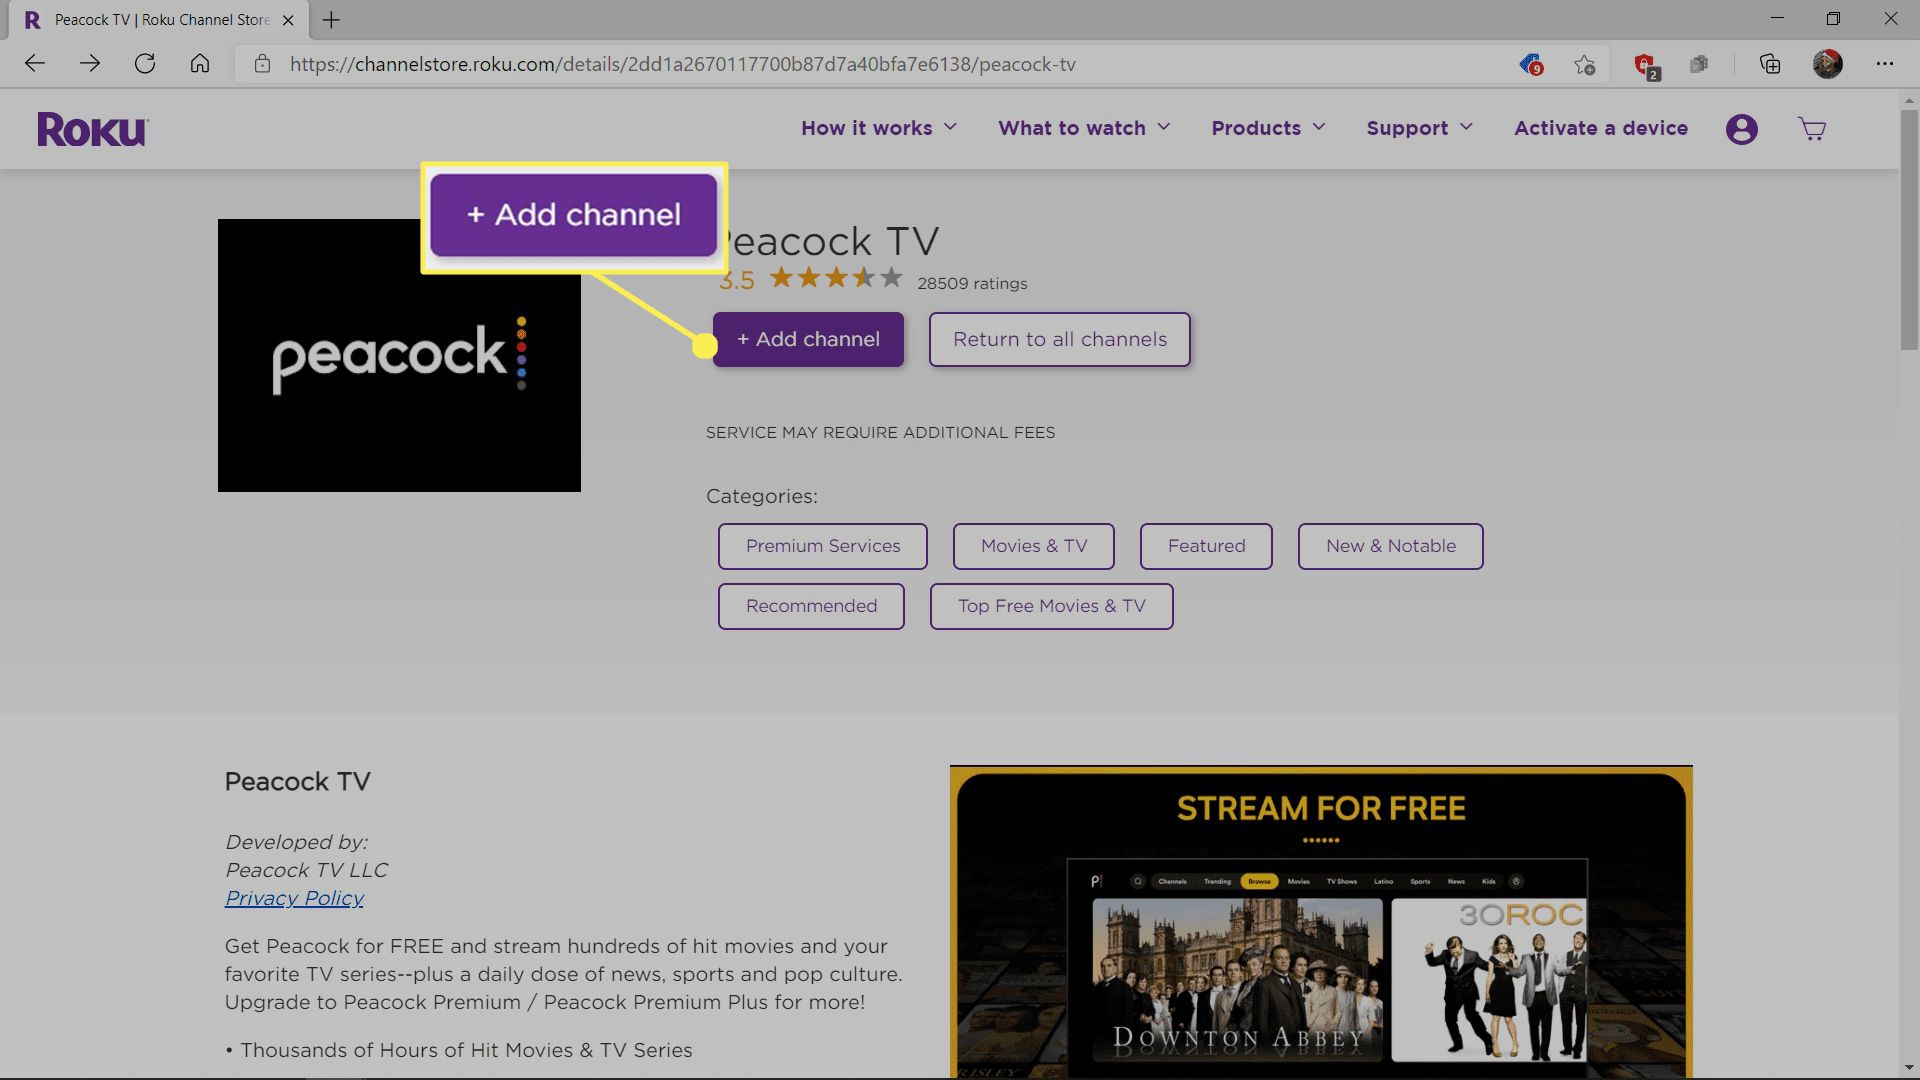 Přidejte kanál zvýrazněný v seznamu Peacock TV v obchodě Channel Roku.